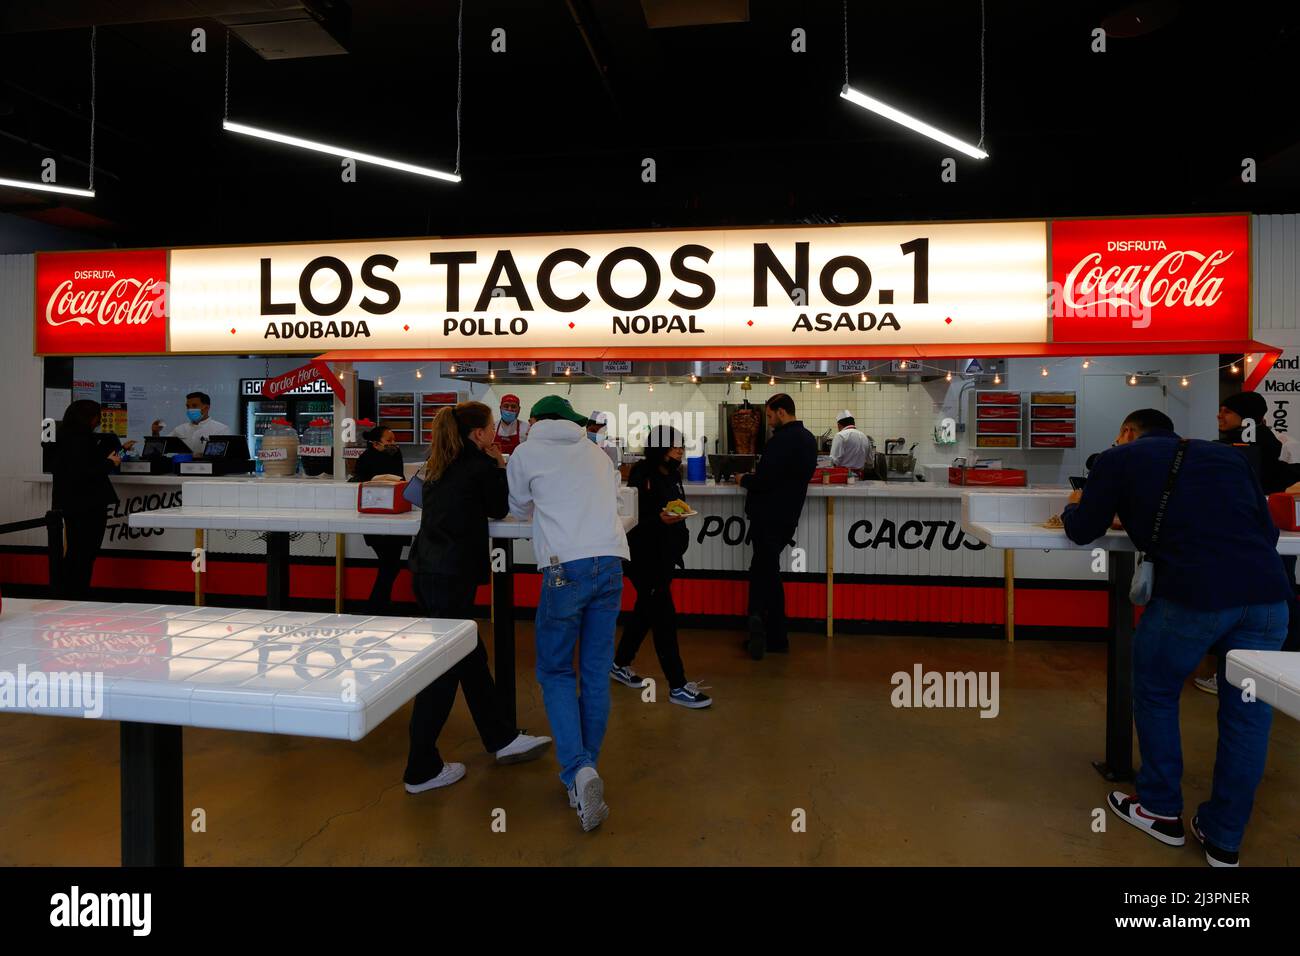 Interno di una catena di ristoranti messicani casual e tacqueria di Los Tacos n° 1 a New York, New York. Foto Stock